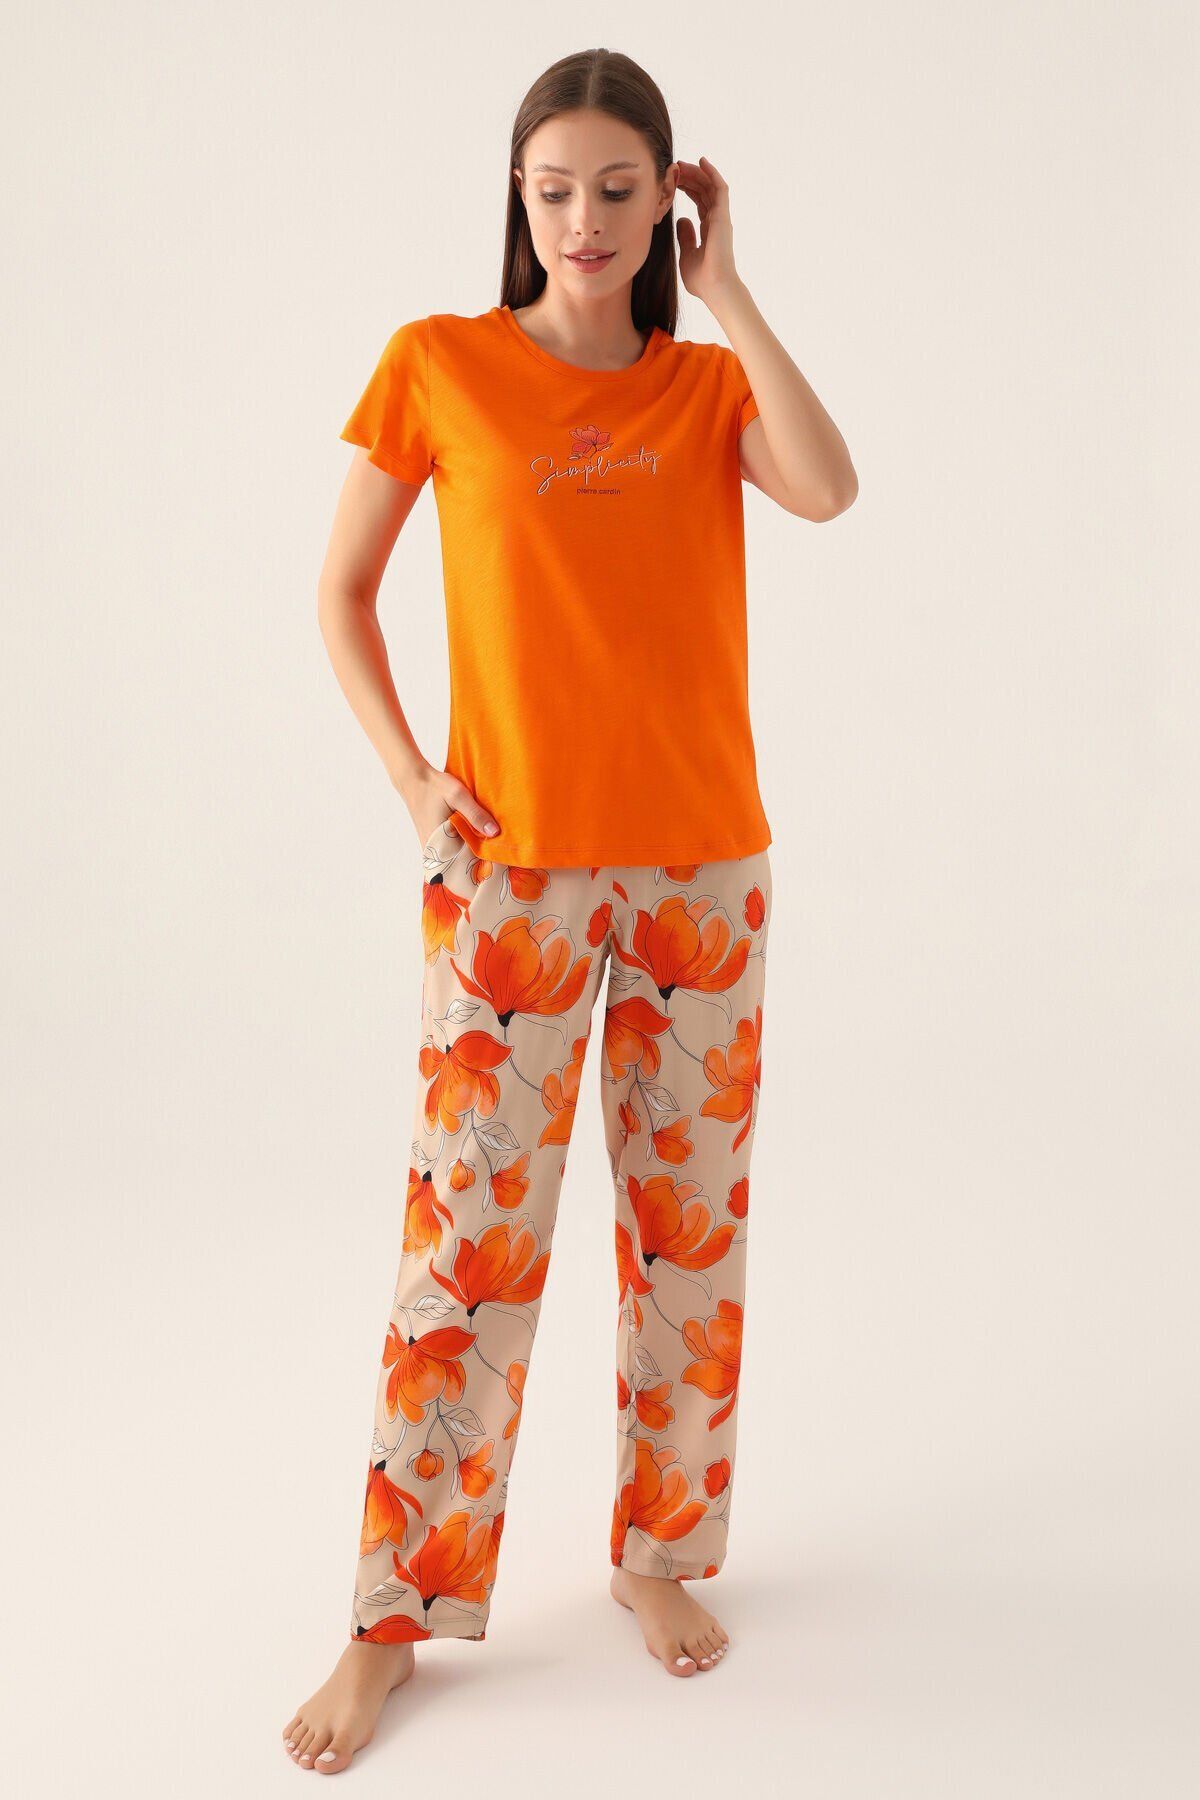 Pierre Cardin 8813 Sirplicity Kadın Kısa Kol Pijama Takımı